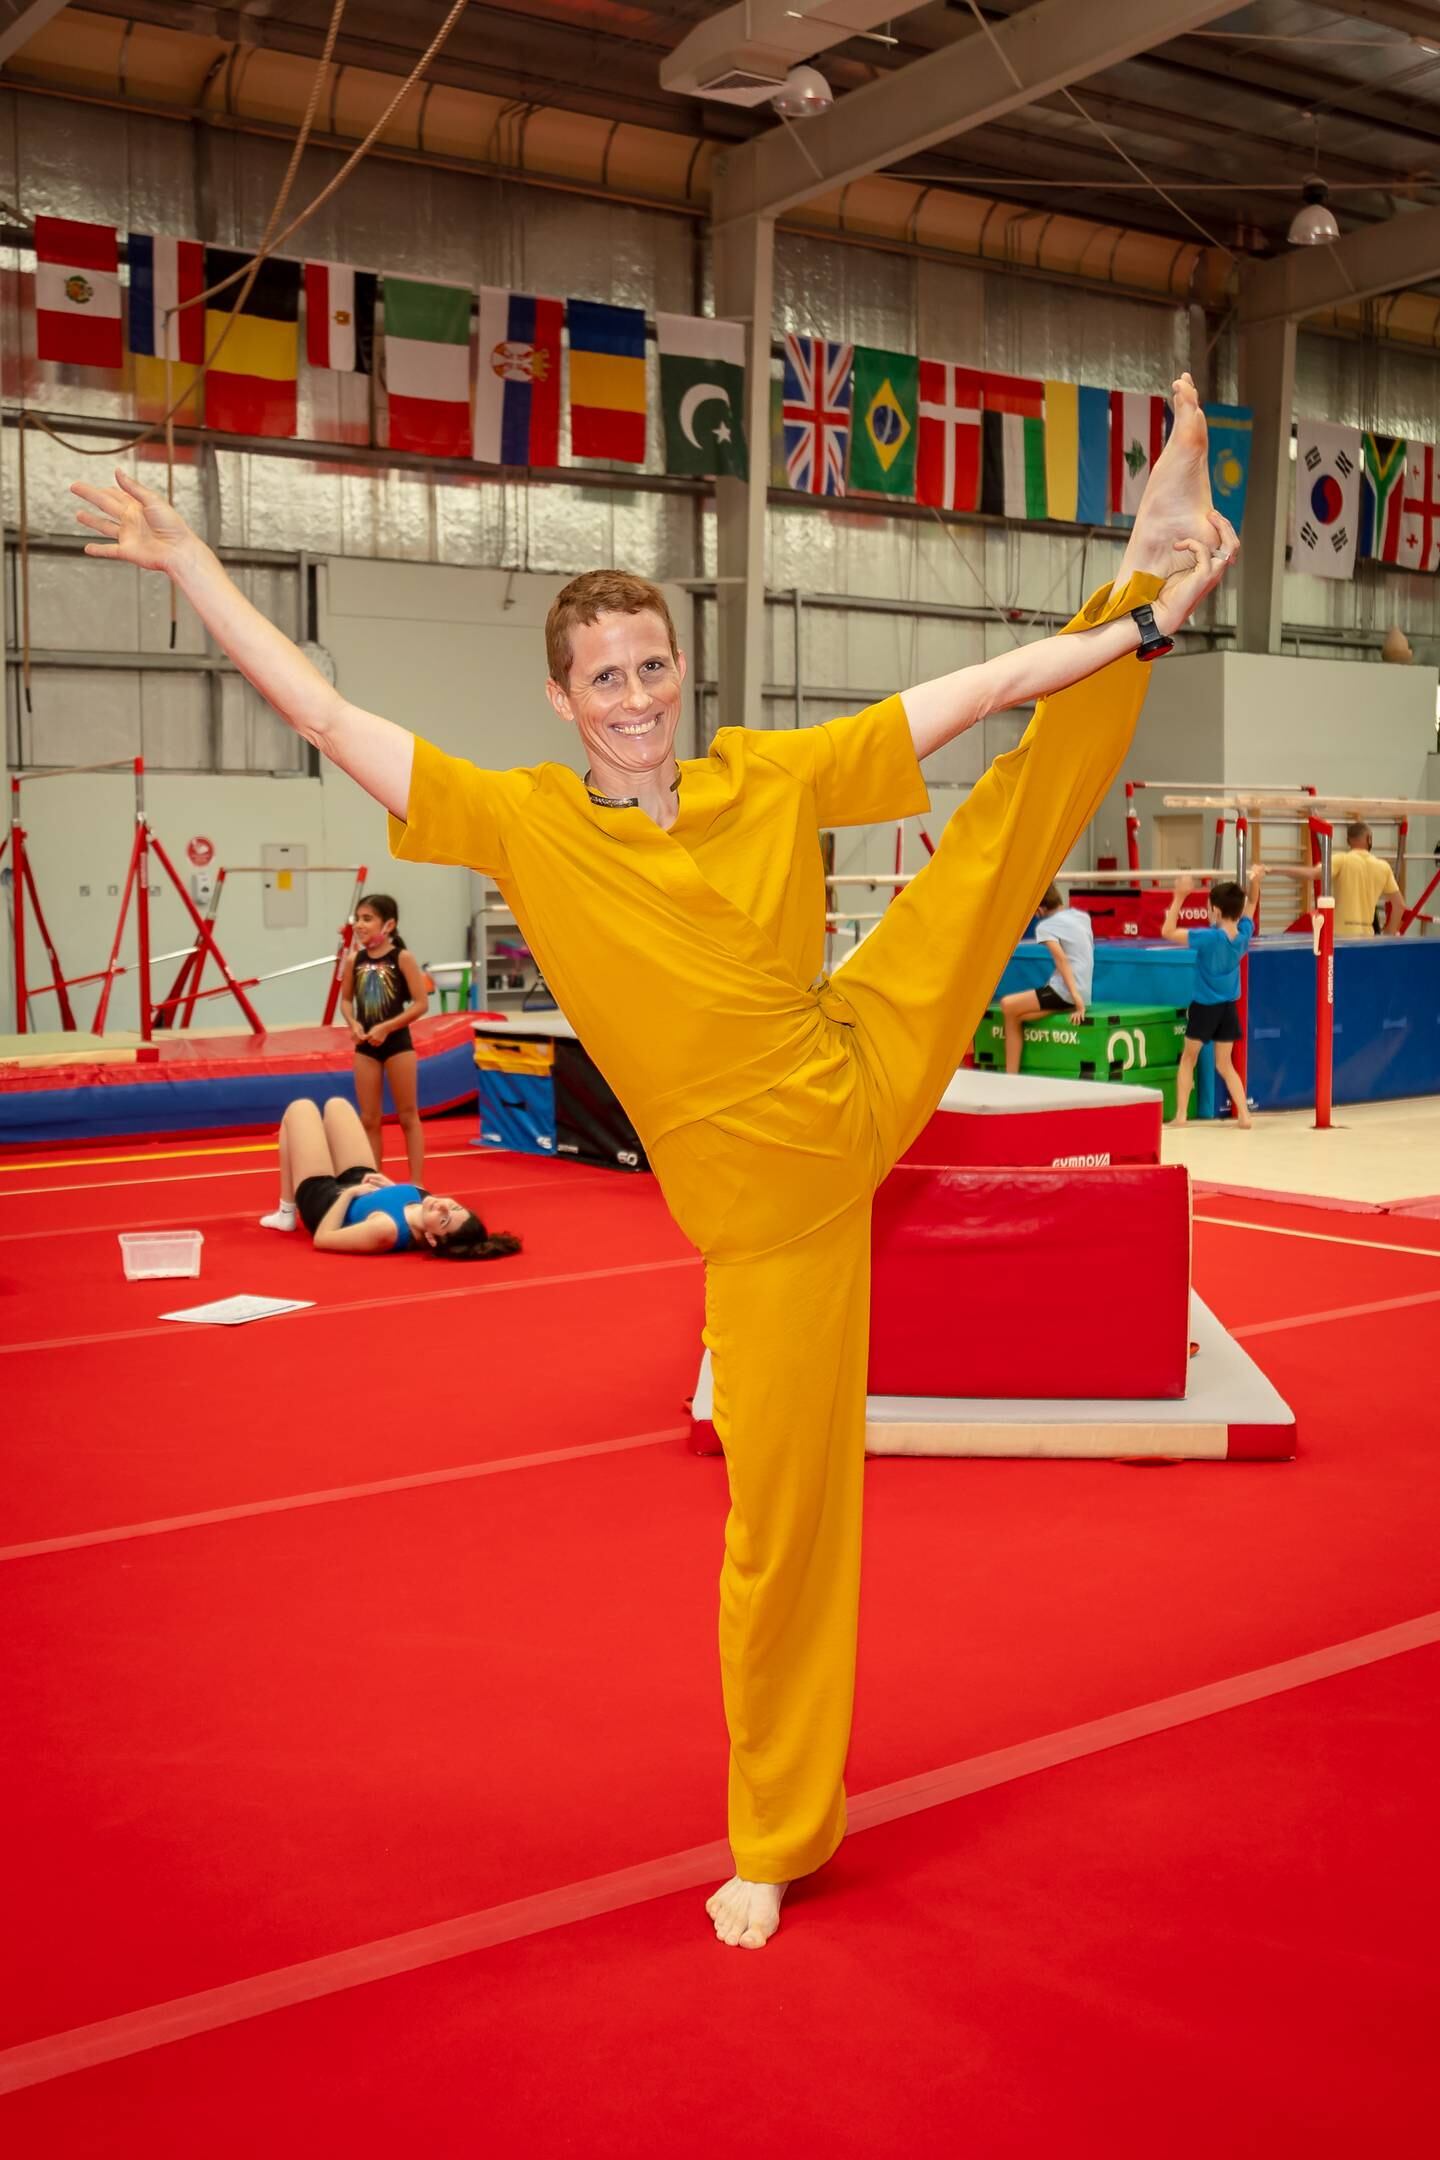 Elke Vinck, founder of Aspire Gymnastics, began pursuing the sport after having five children.